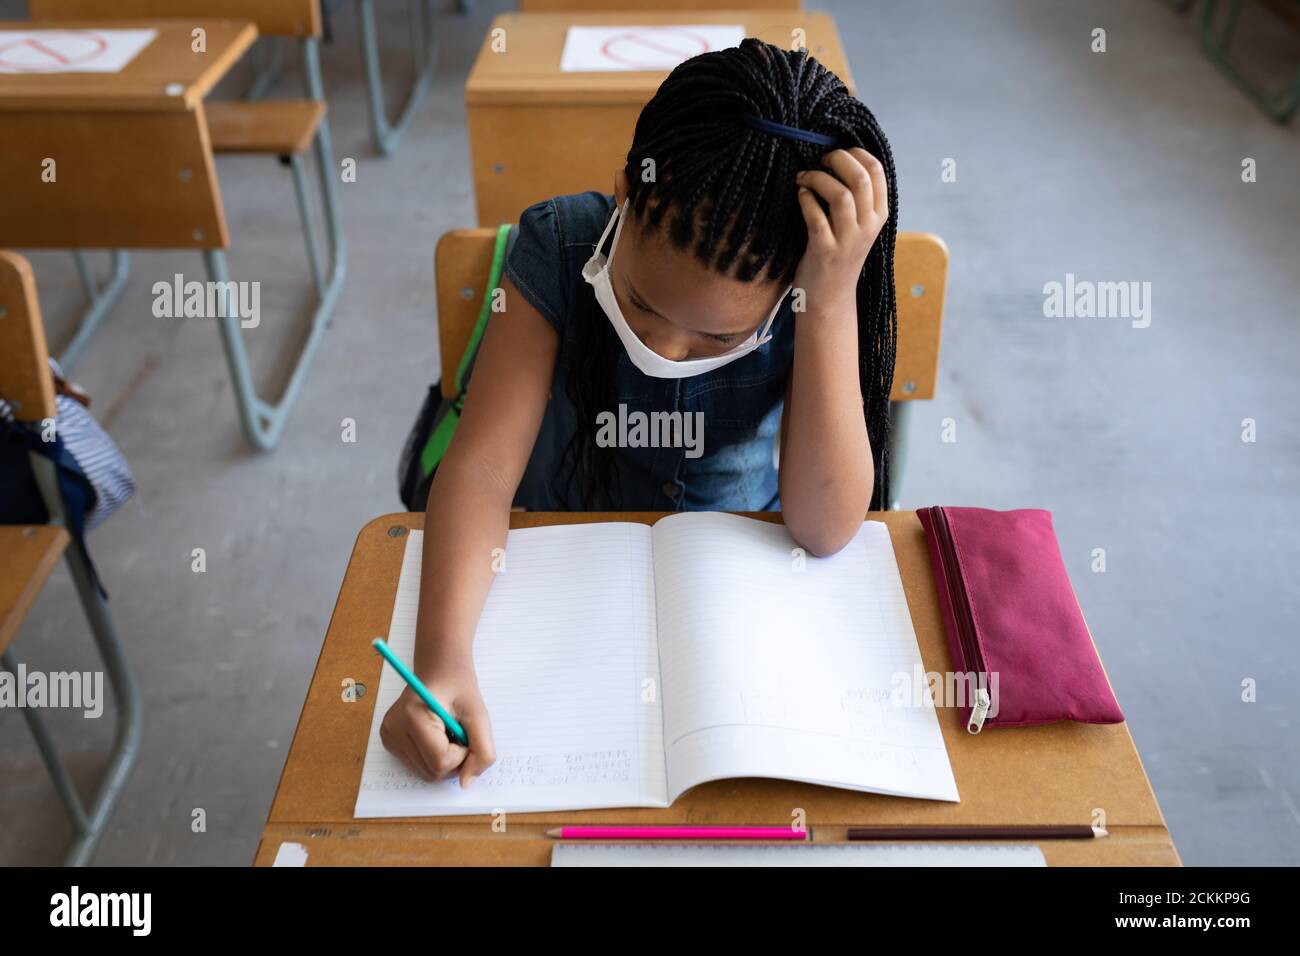 Vue de dessus d'une fille portant un masque de visage écrivant pendant qu'elle est assise sur son bureau à l'école Banque D'Images